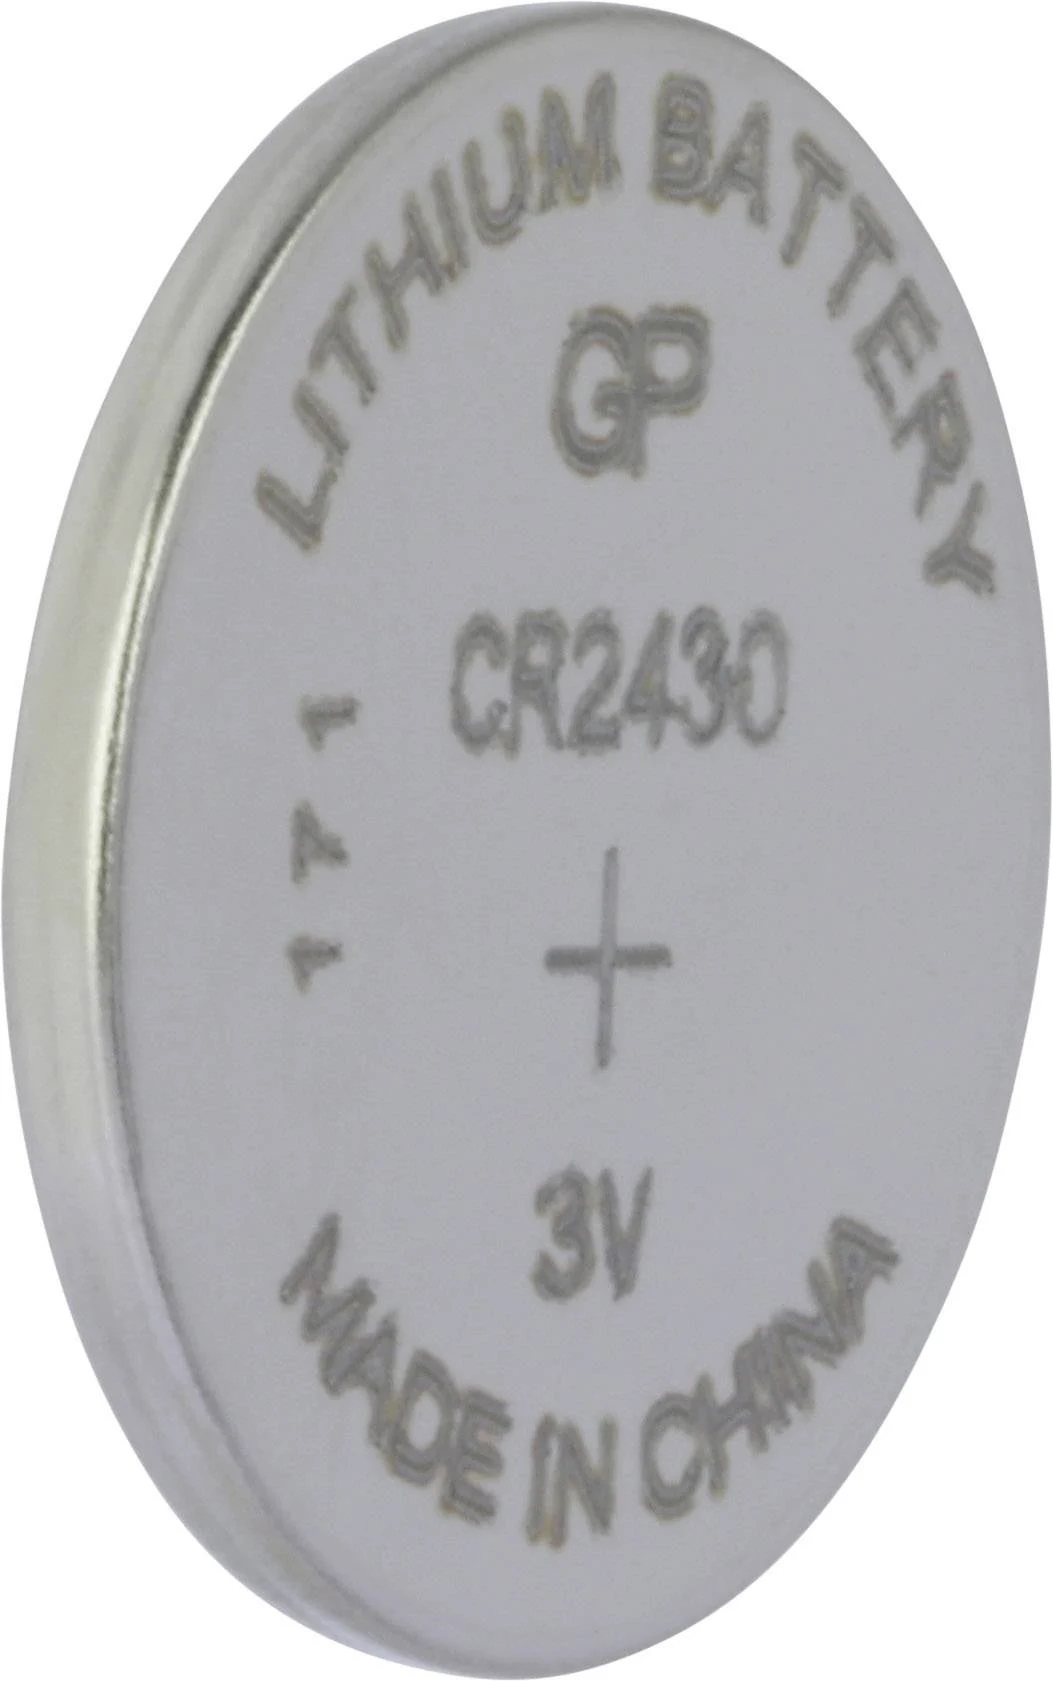 GP CR-2430 3V 300 mAh Lítium gombelem